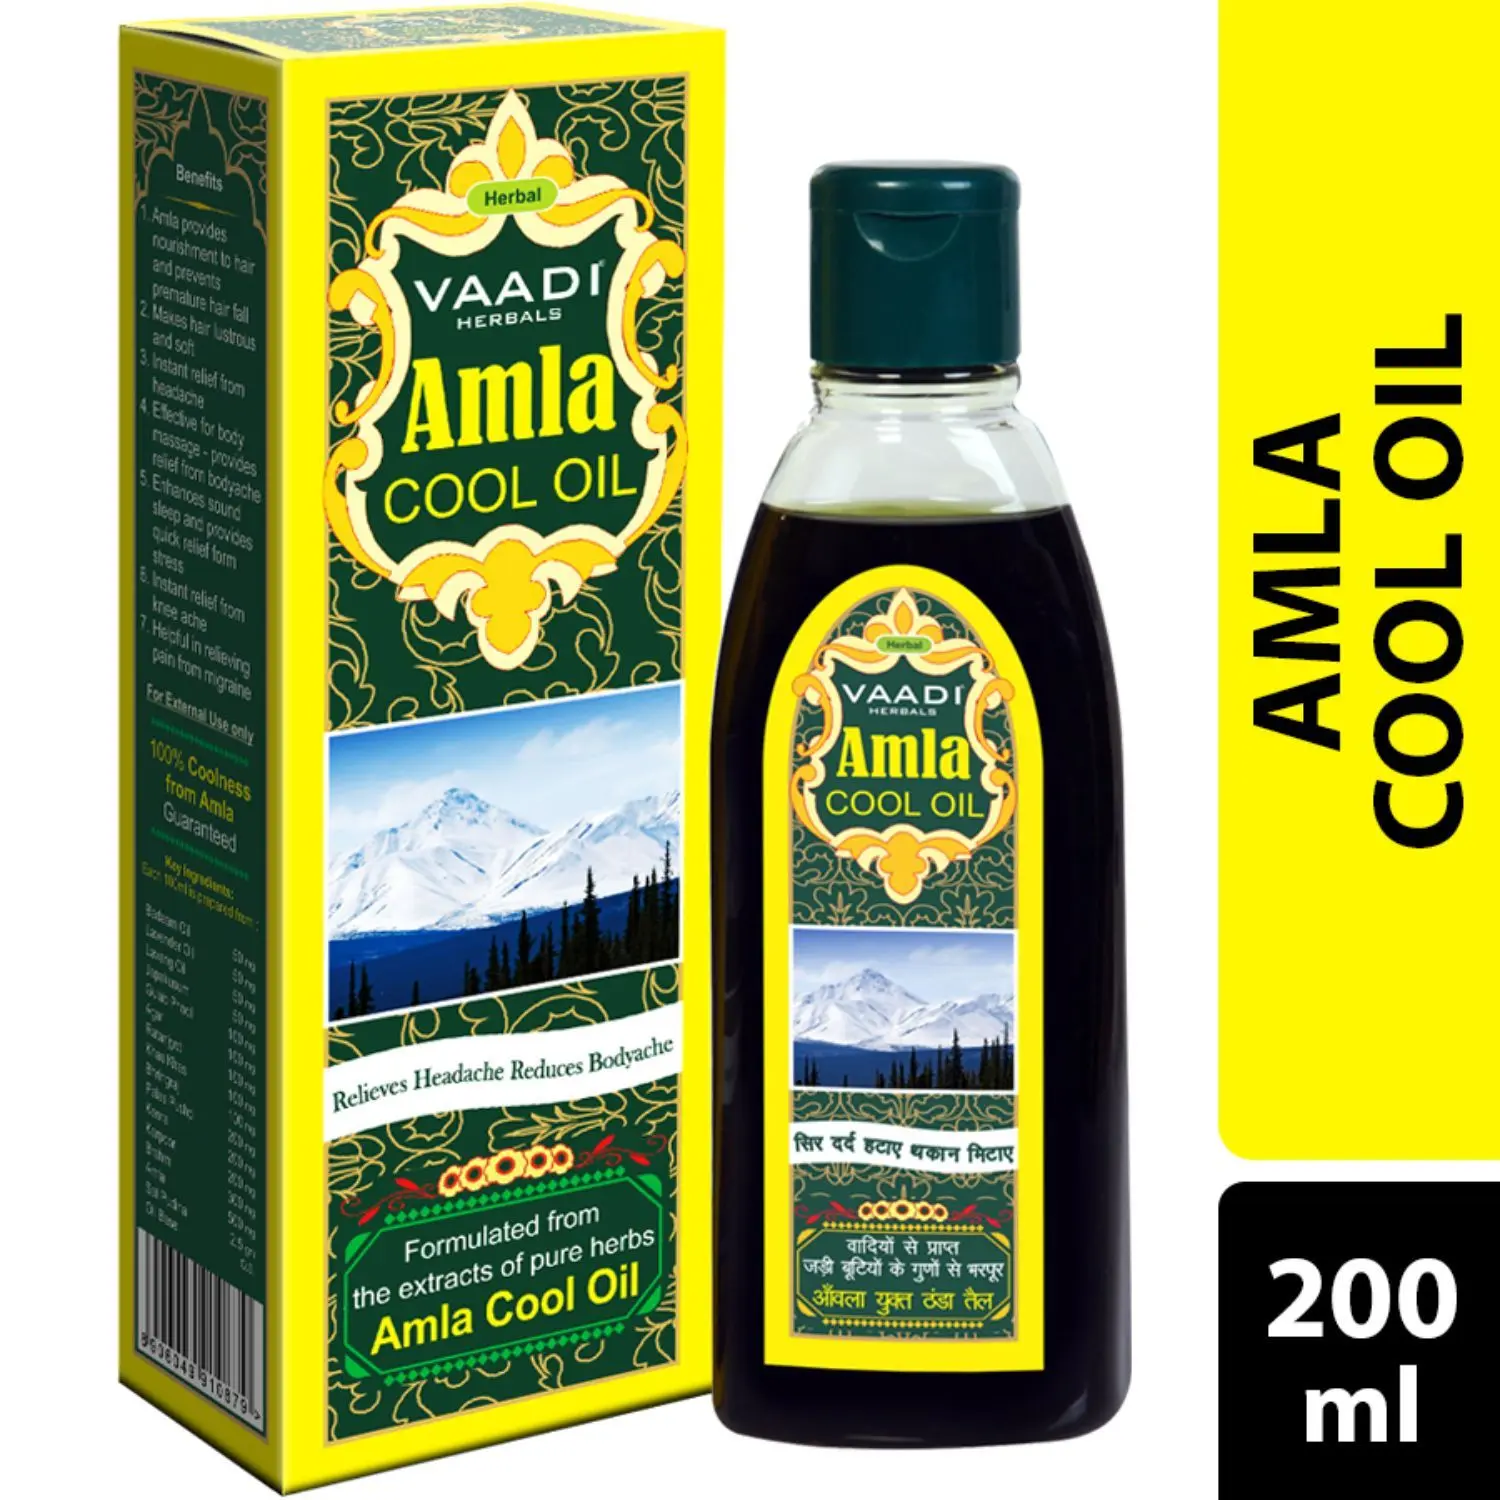 Vaadi Herbals Amla Cool Oil with Brahmi & Amla Extract (200 ml)